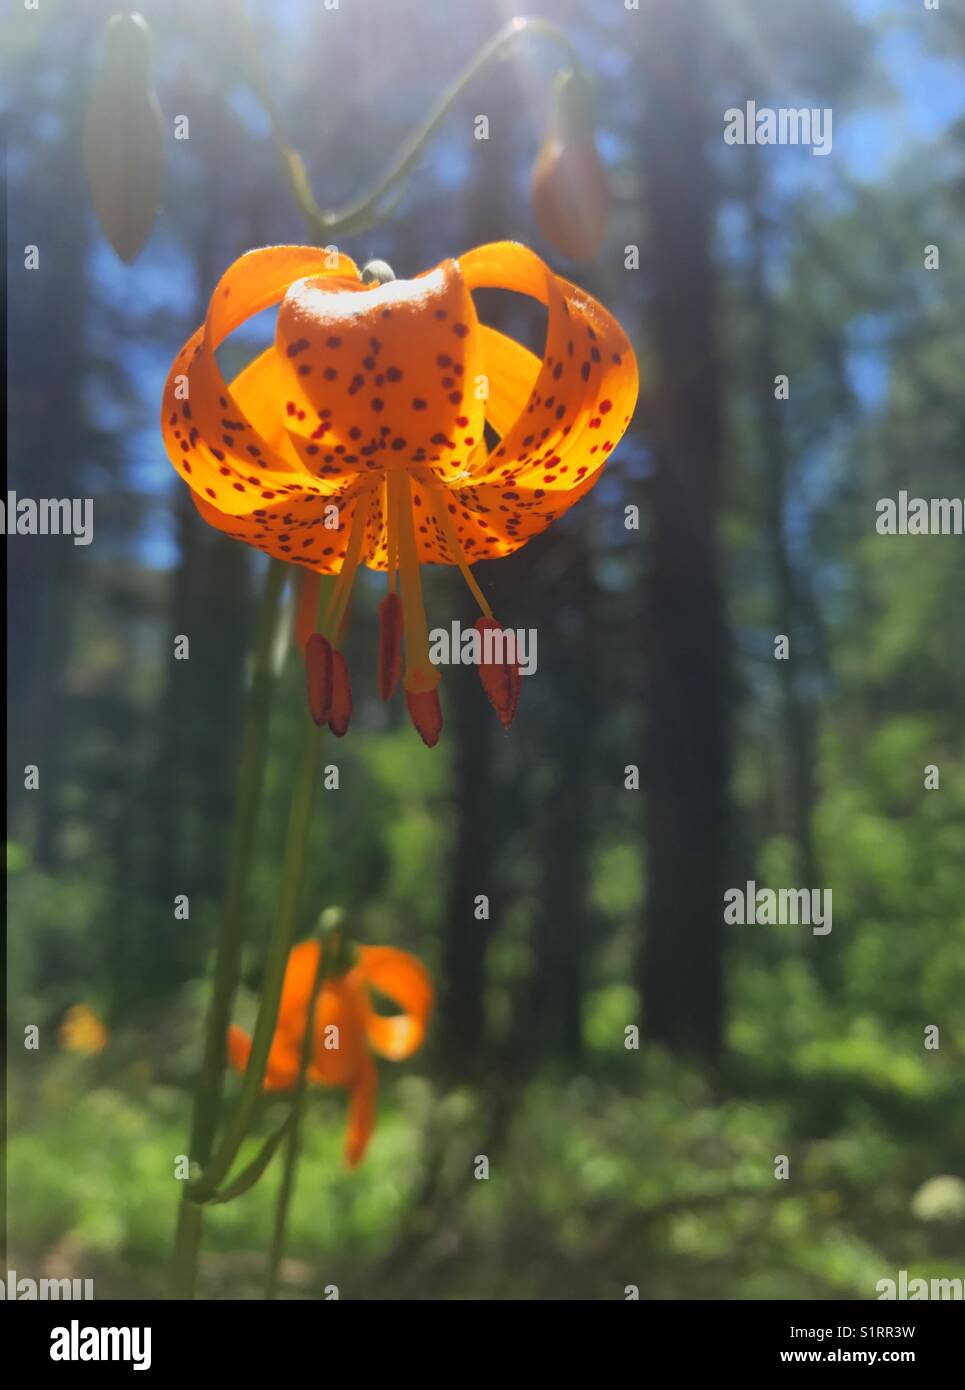 Kelly's Lily ist eine natürliche Lilie in den Sierra Nevada Bergen in halb schattige Bereiche in der Nähe von Wasser gefunden. Stockfoto